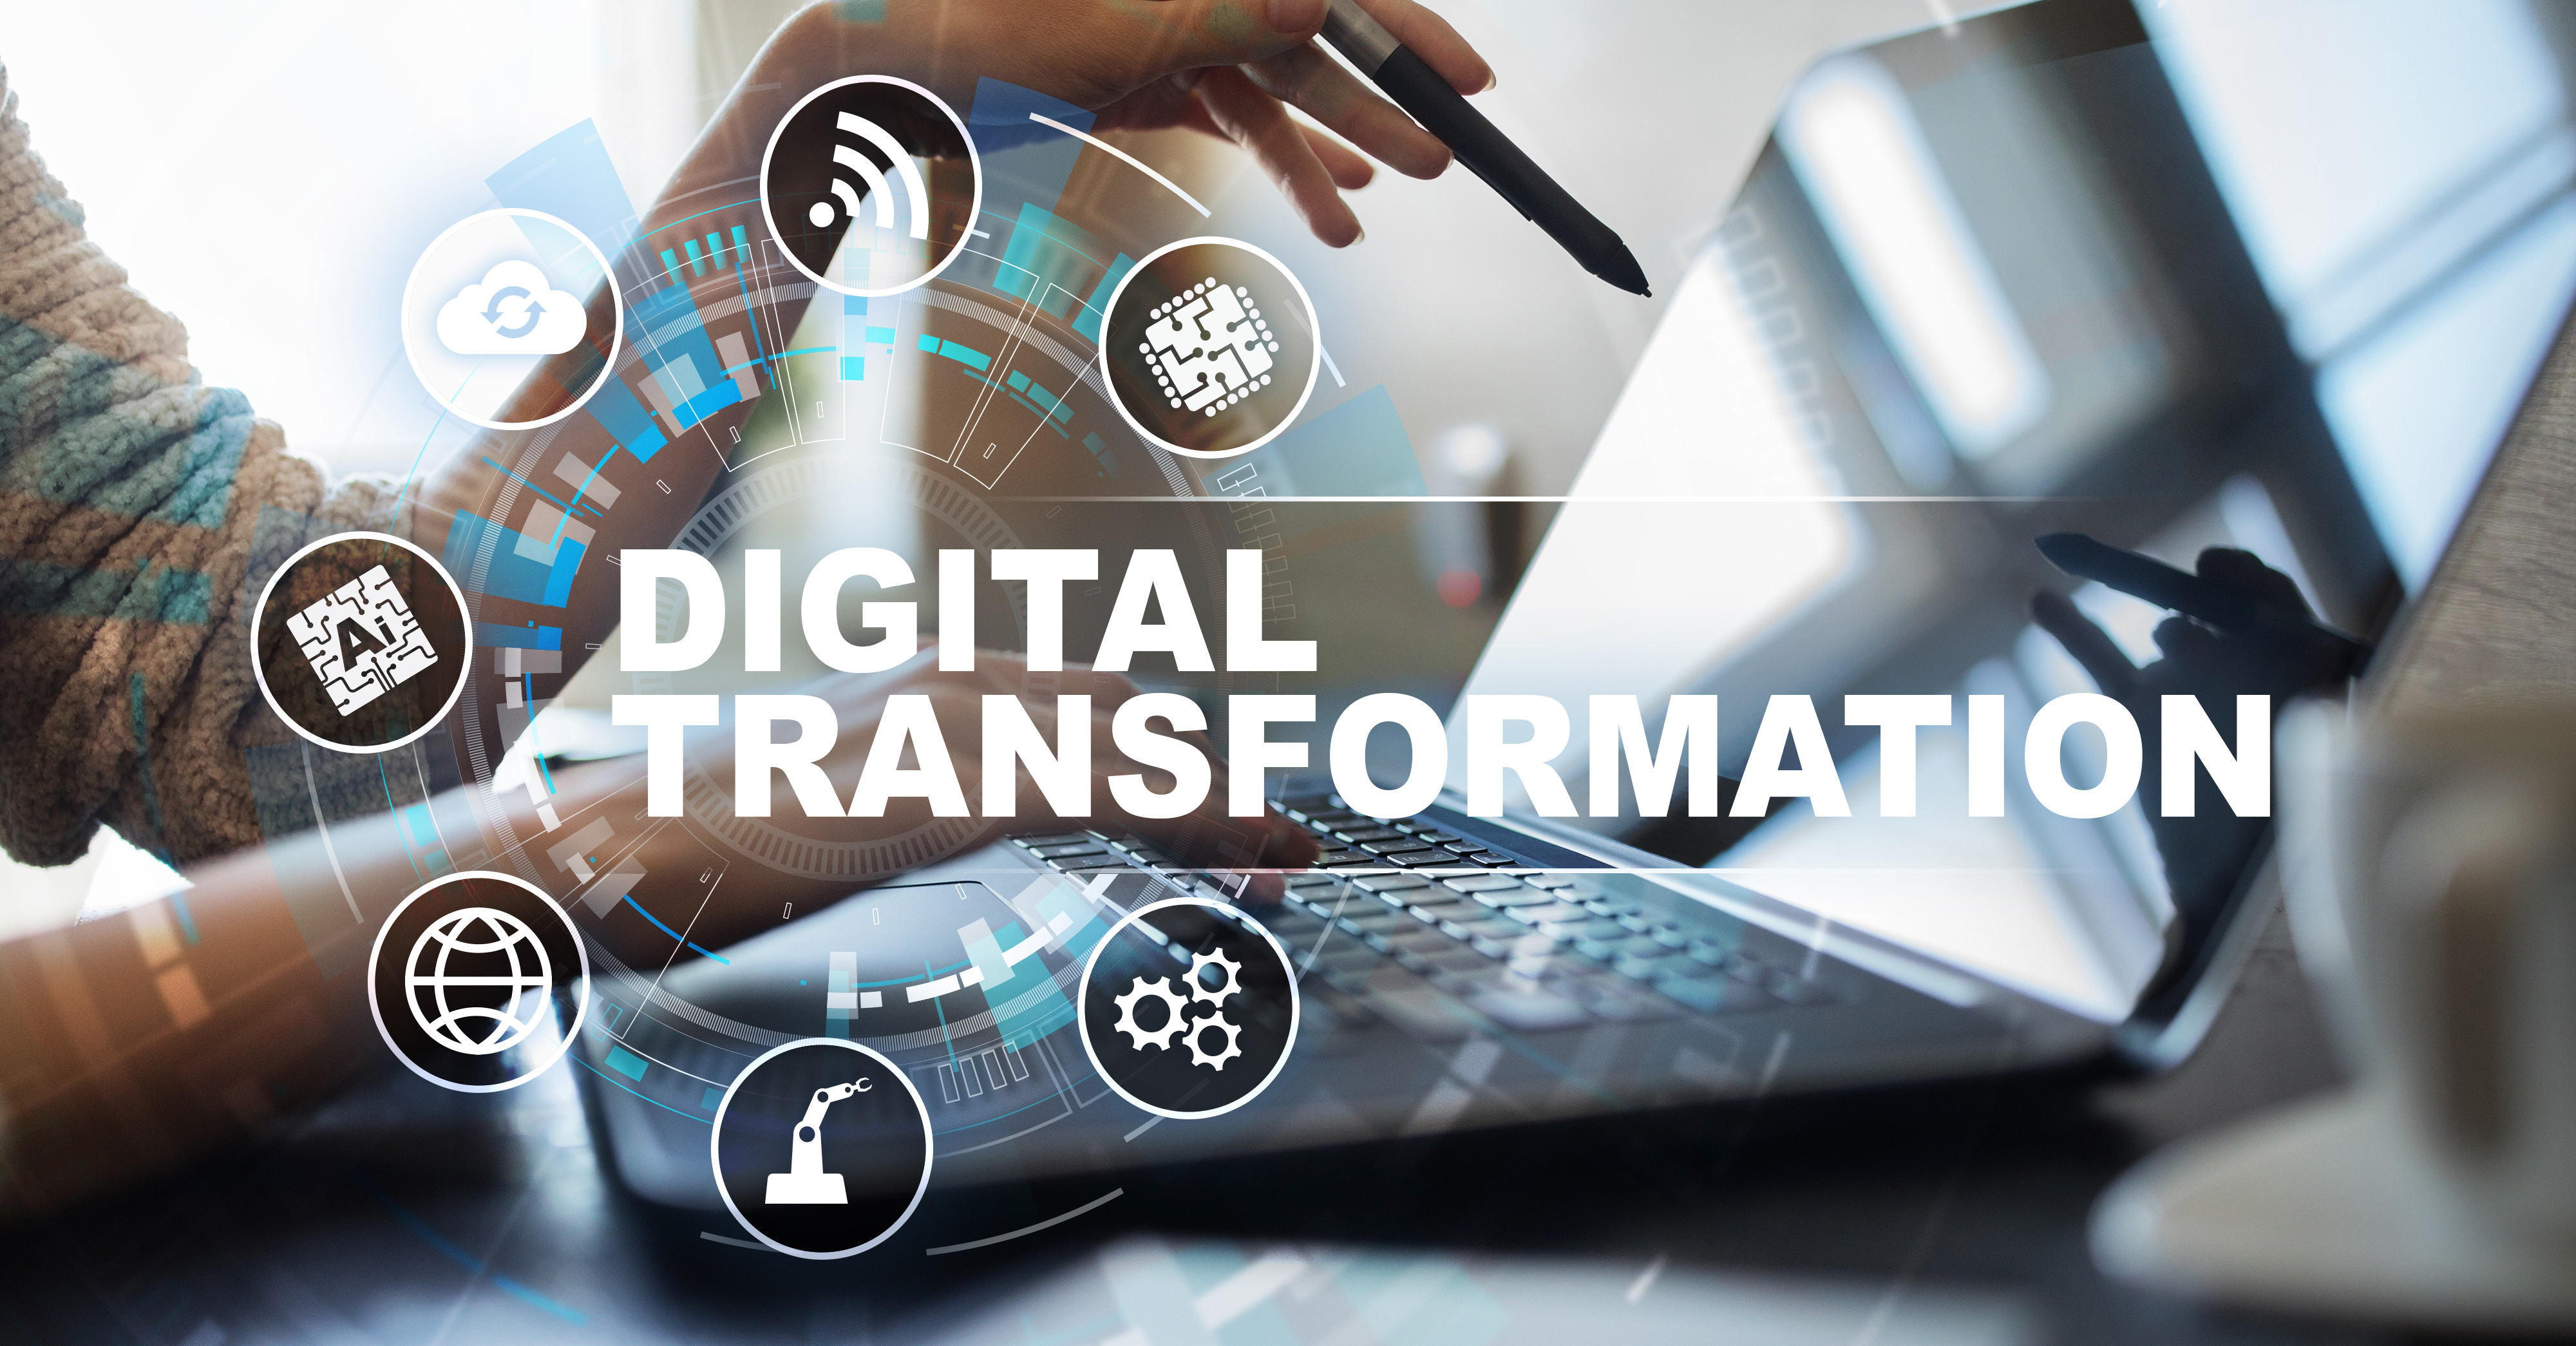 Finden Sie heraus, wie digitale Transformation definiert ist und erfahren Sie, wie sie sich auf die verschiedenen Abteilungen Ihres Unternehmens auswirkt.